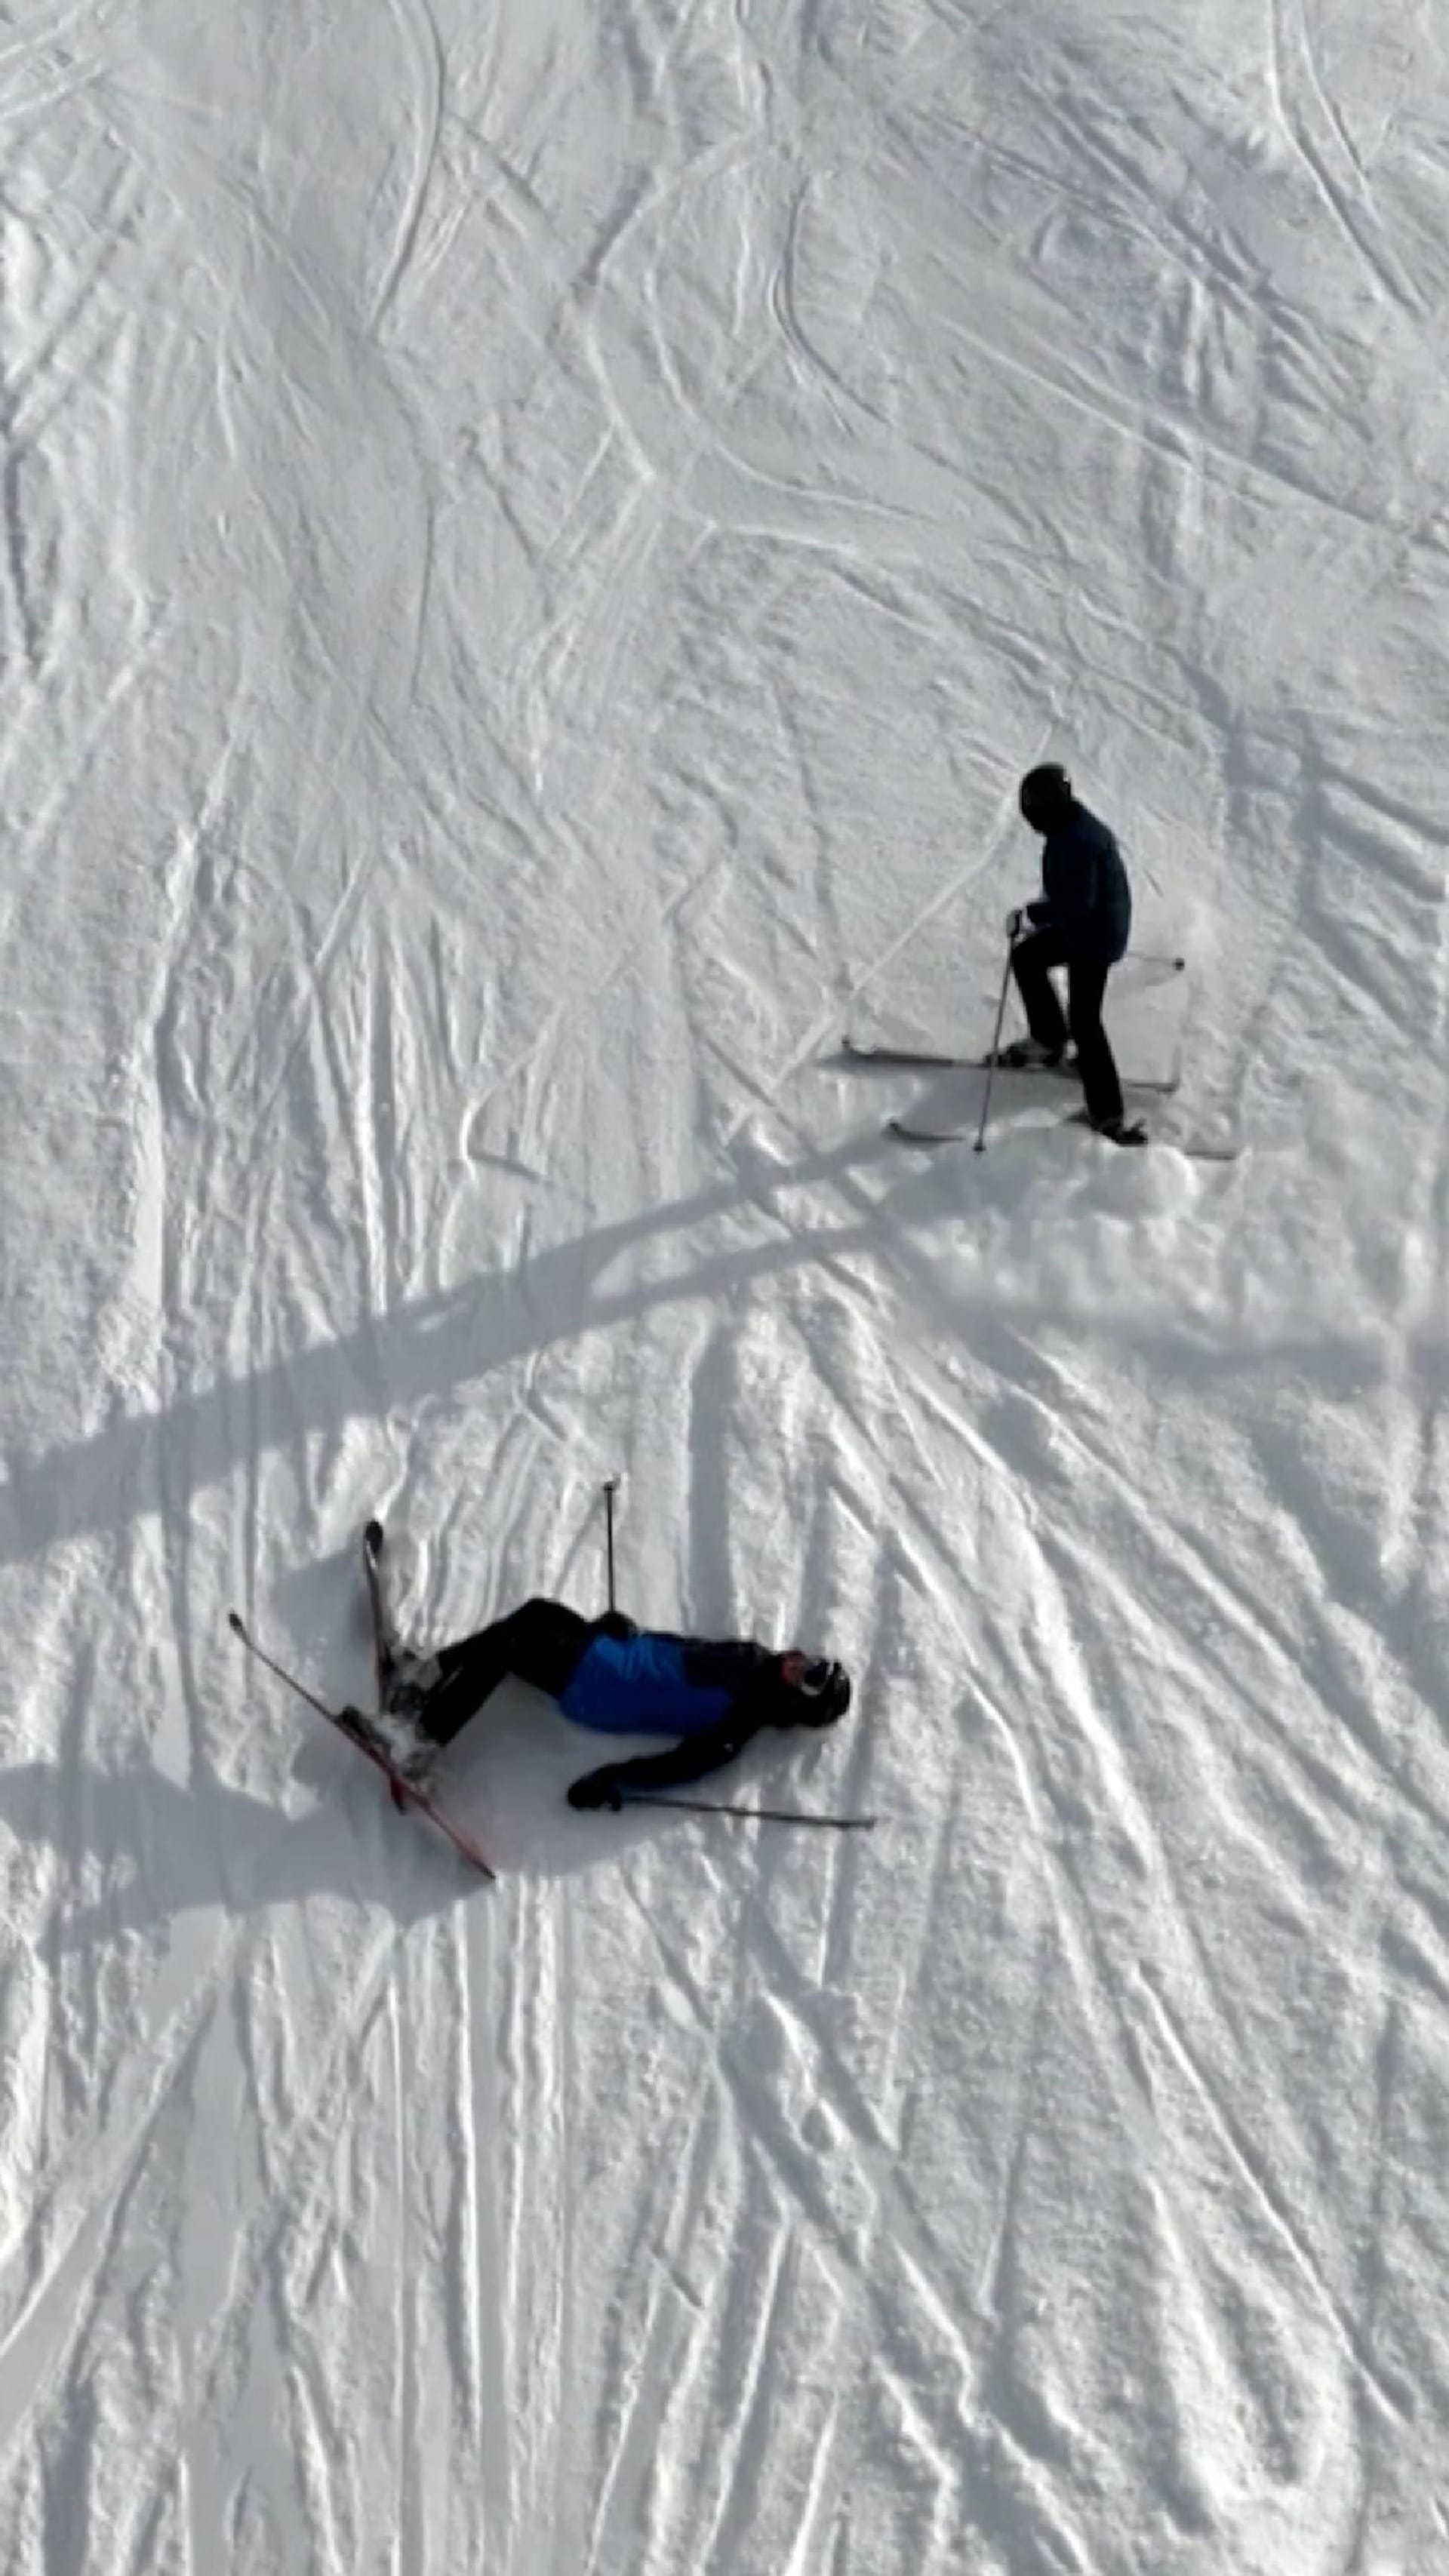 A call for safer ski slopes in Switzerland       